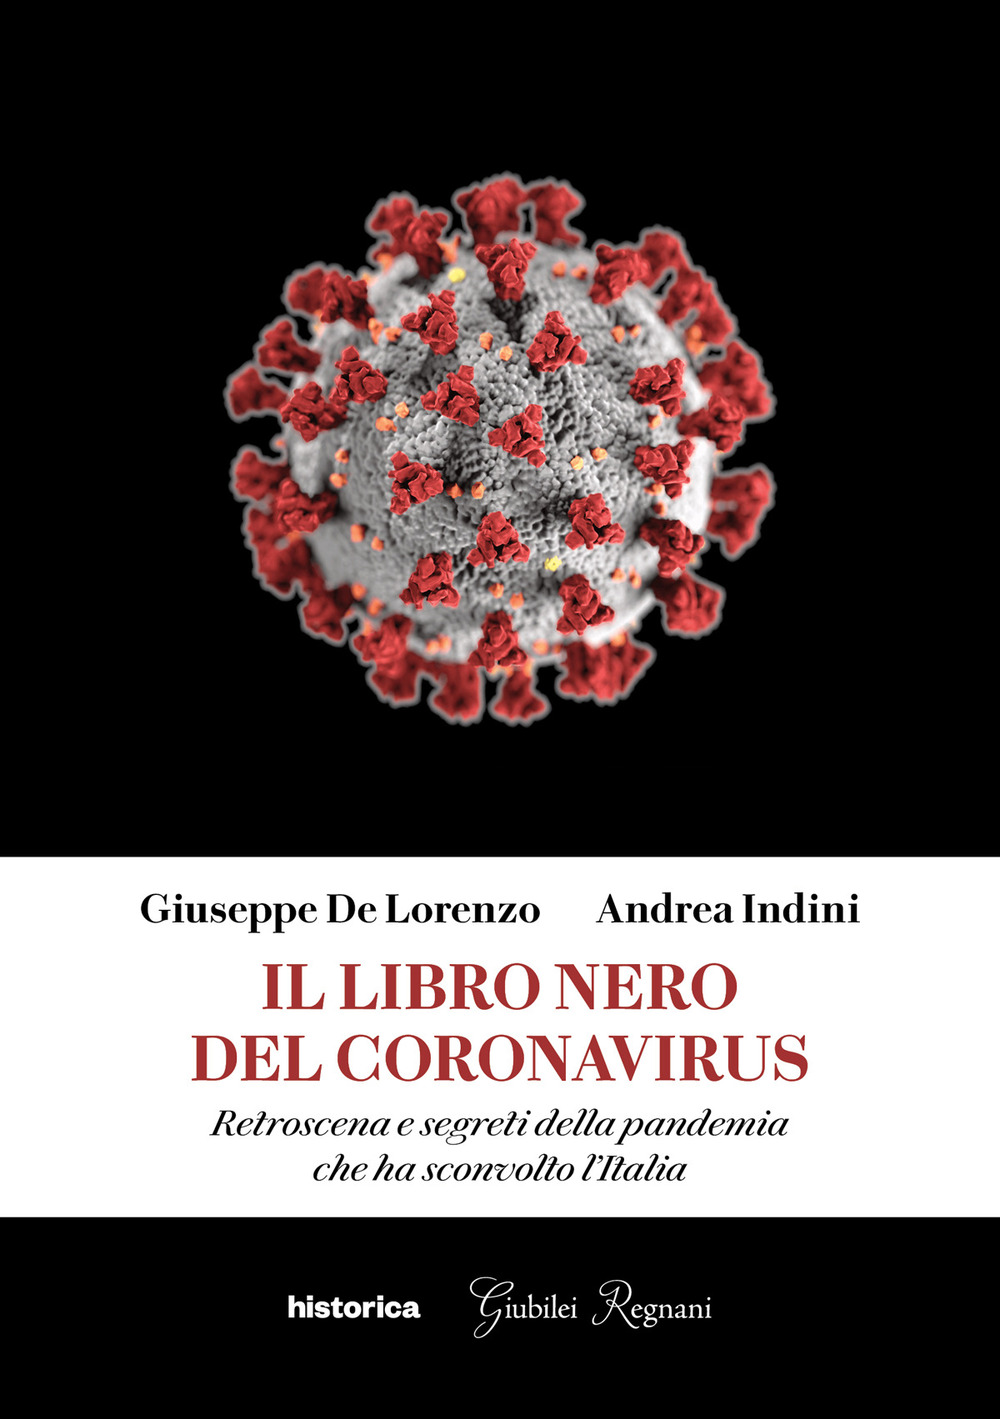 Il libro nero del coronavirus. Retroscena e segreti della pandemia che ha sconvolto l'Italia